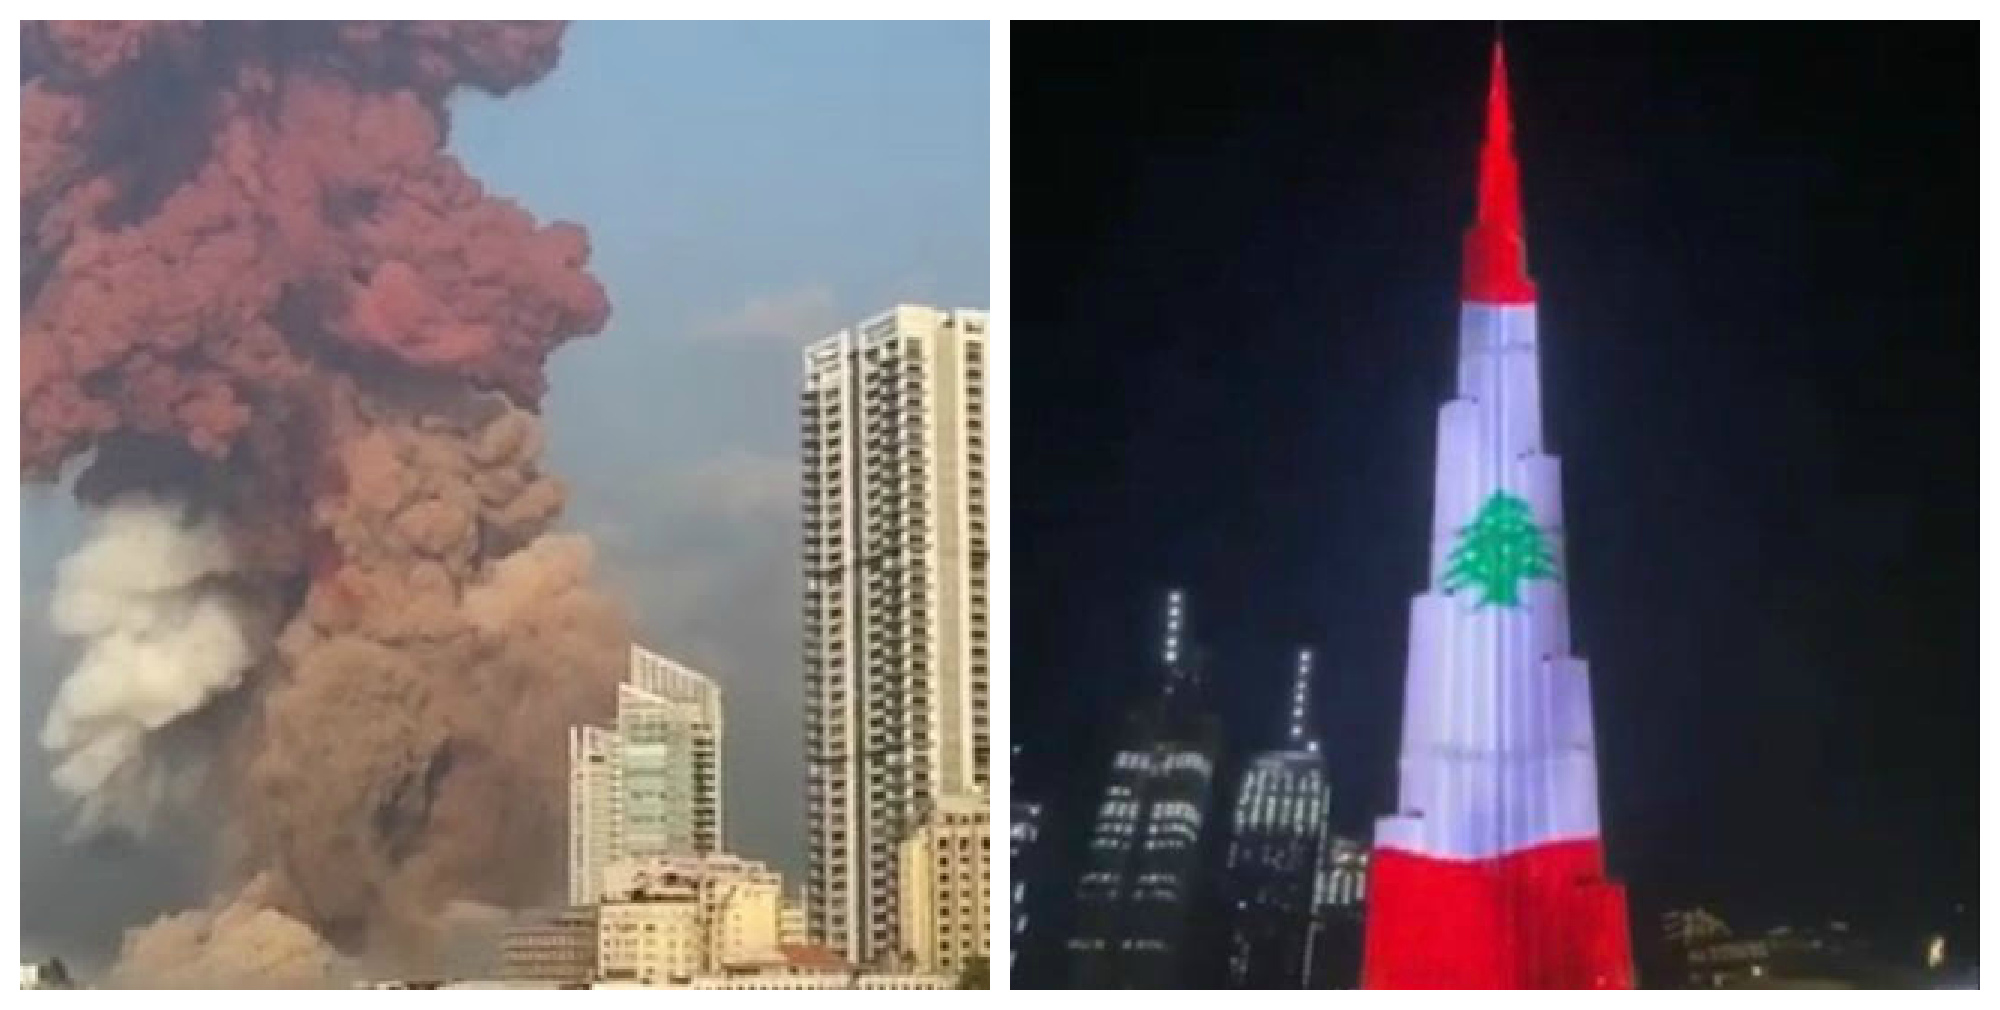 Դուբայում Բուրջ Խալիֆան ի նշան համերաշխության լուսավորվել է լիբանանյան դրոշի գույներով (տեսանյութ)